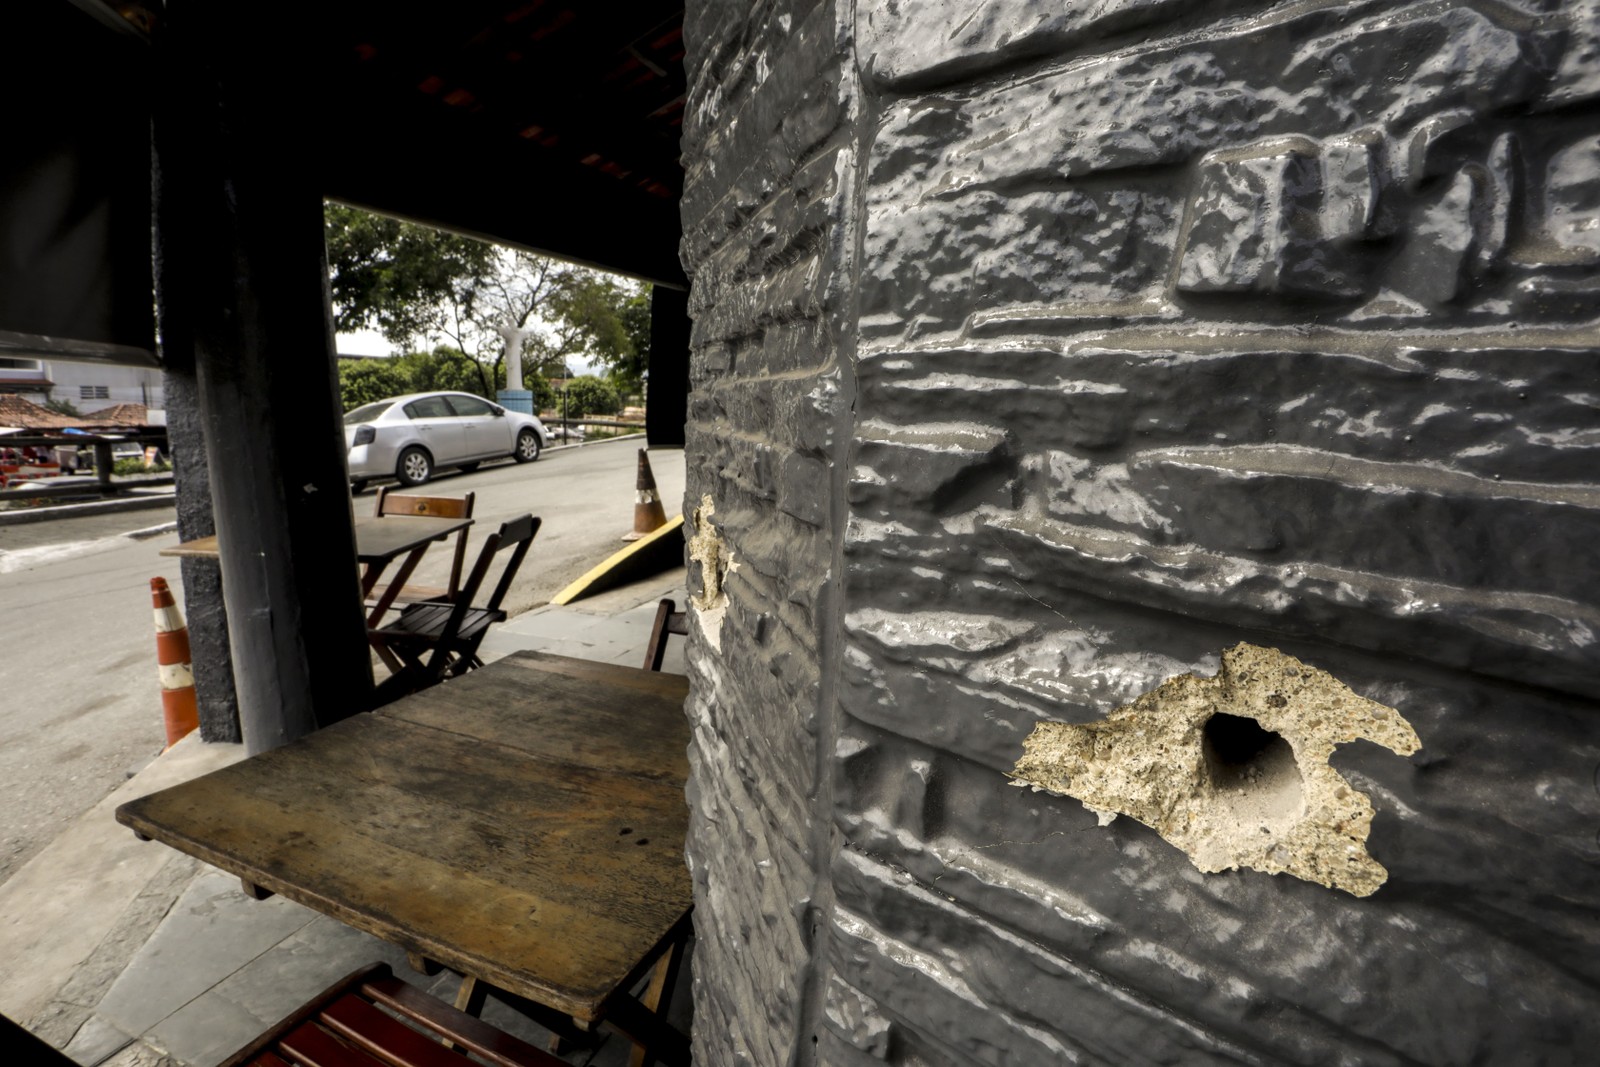 Marcas de tiro podem ser vistas em diferentes lugares: carros, estabelecimentos, paredes e outros. — Foto: Gabriel de Paiva / Agência O Globo